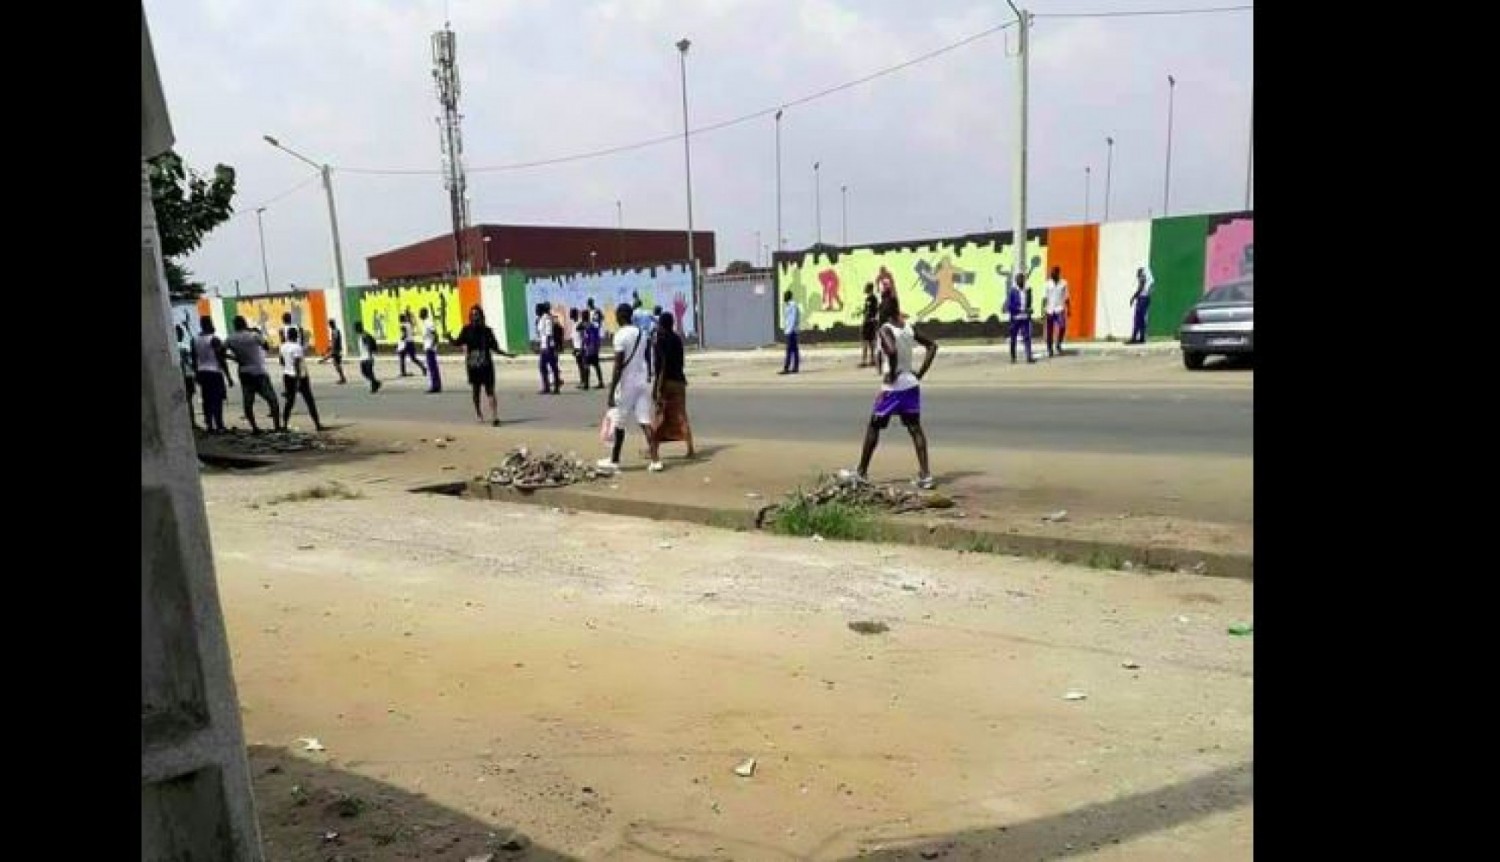 Côte d'Ivoire : Une banale affaire de place au terminus de bus vire à un affrontement entre des groupes d'élèves de deux grandes écoles, les cours suspendus